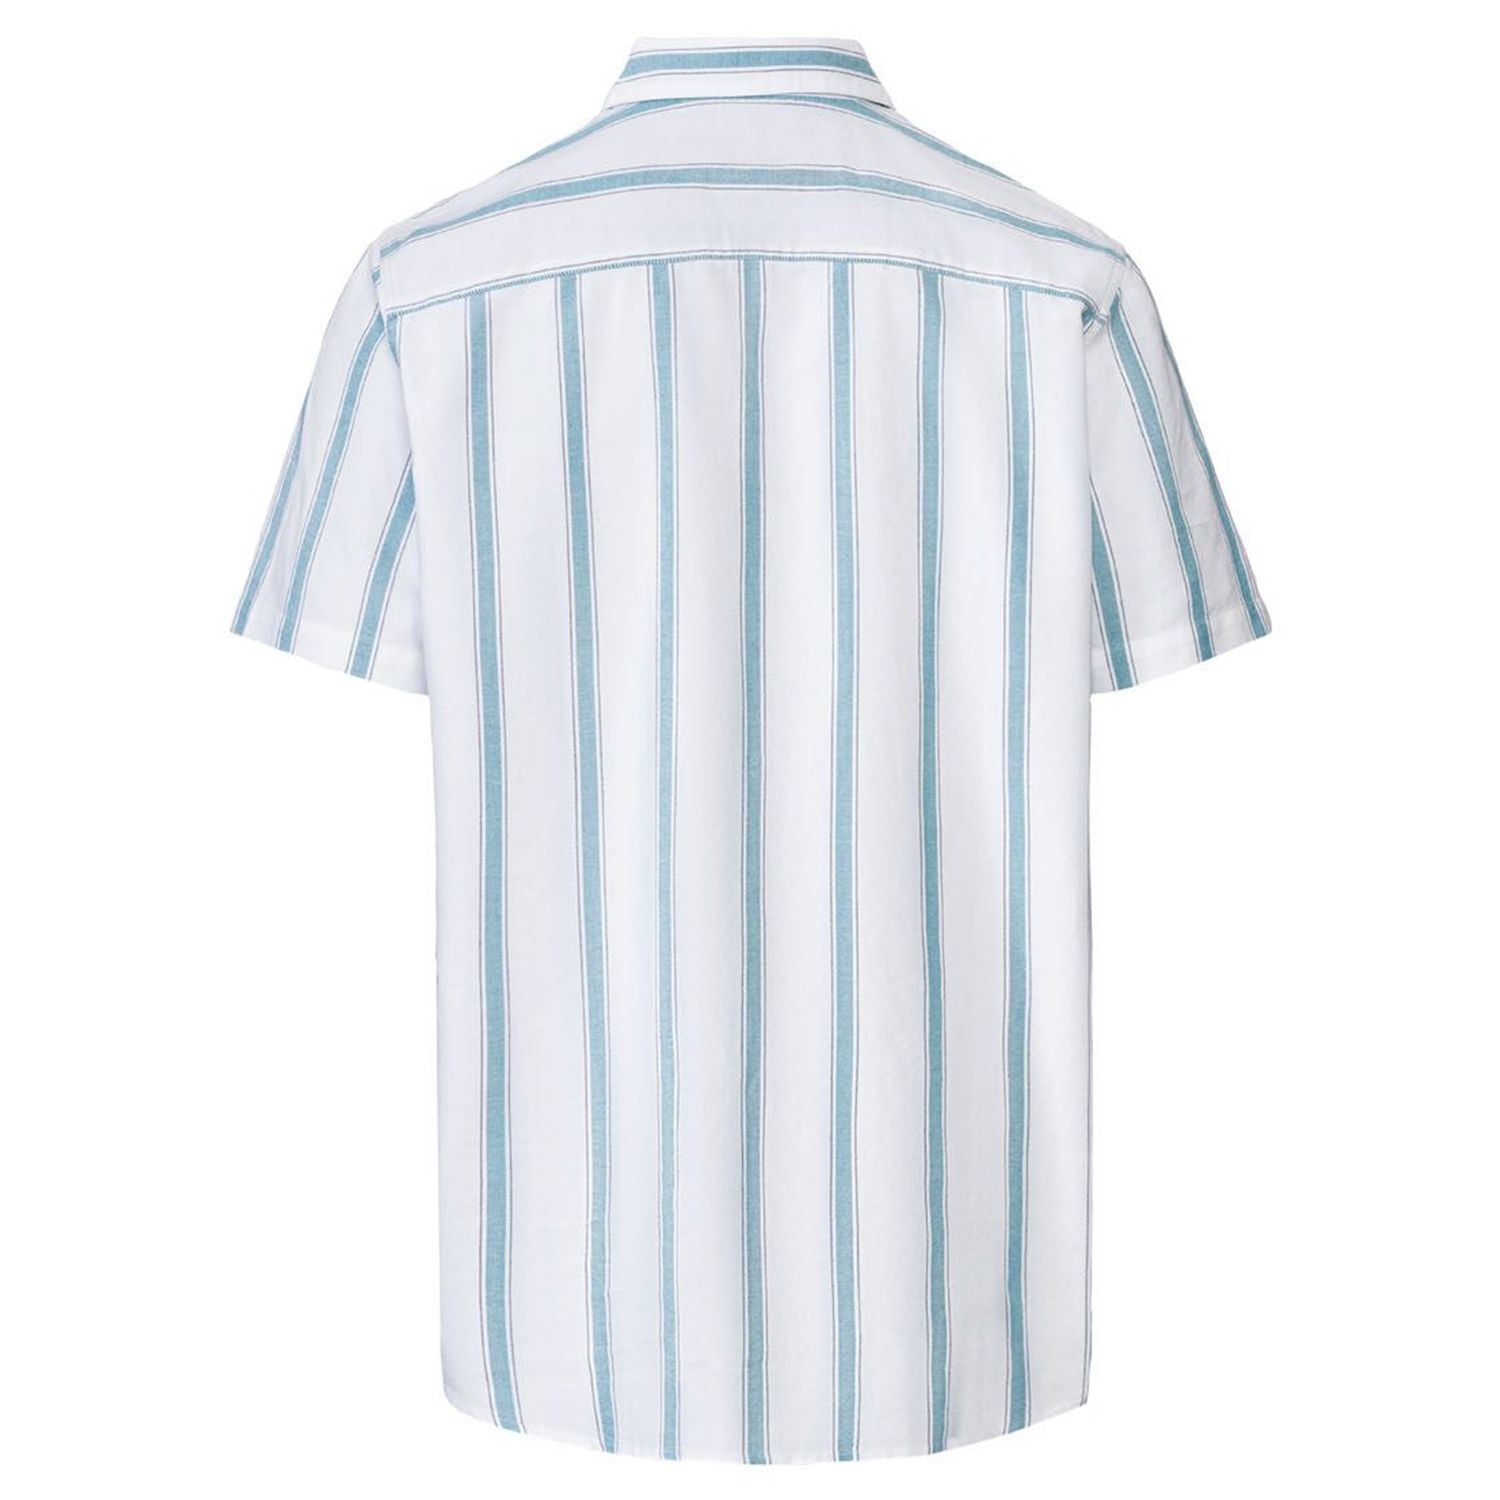 پیراهن آستین کوتاه مردانه لیورجی مدل راه راه کد Modern2022 رنگ سفید -  - 2